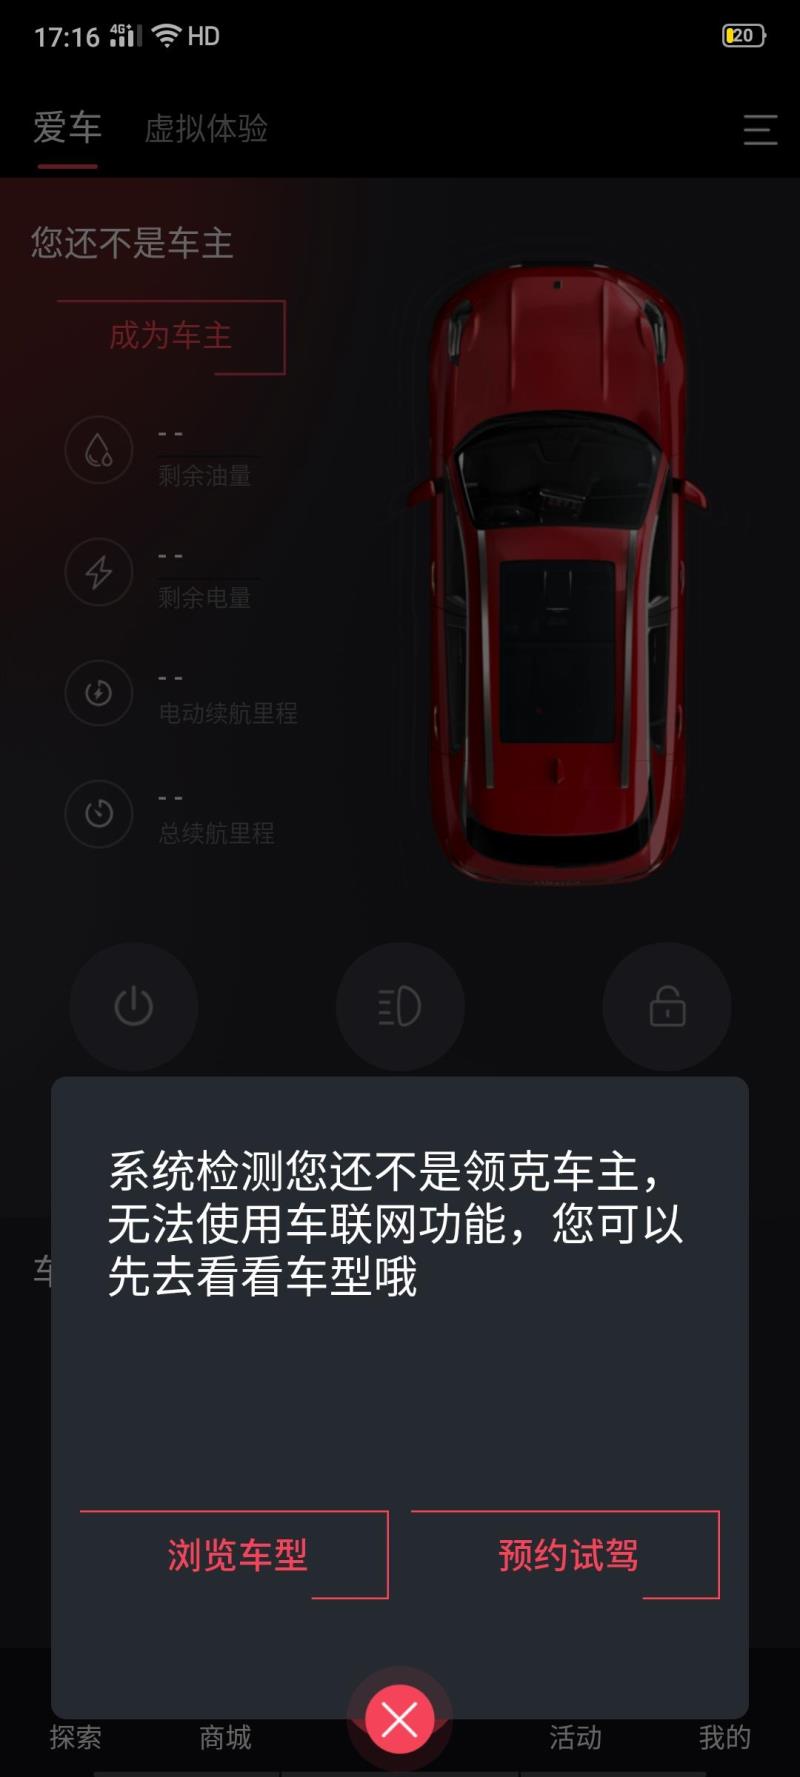 谁知道领克03这个手机app怎么连接汽车啊